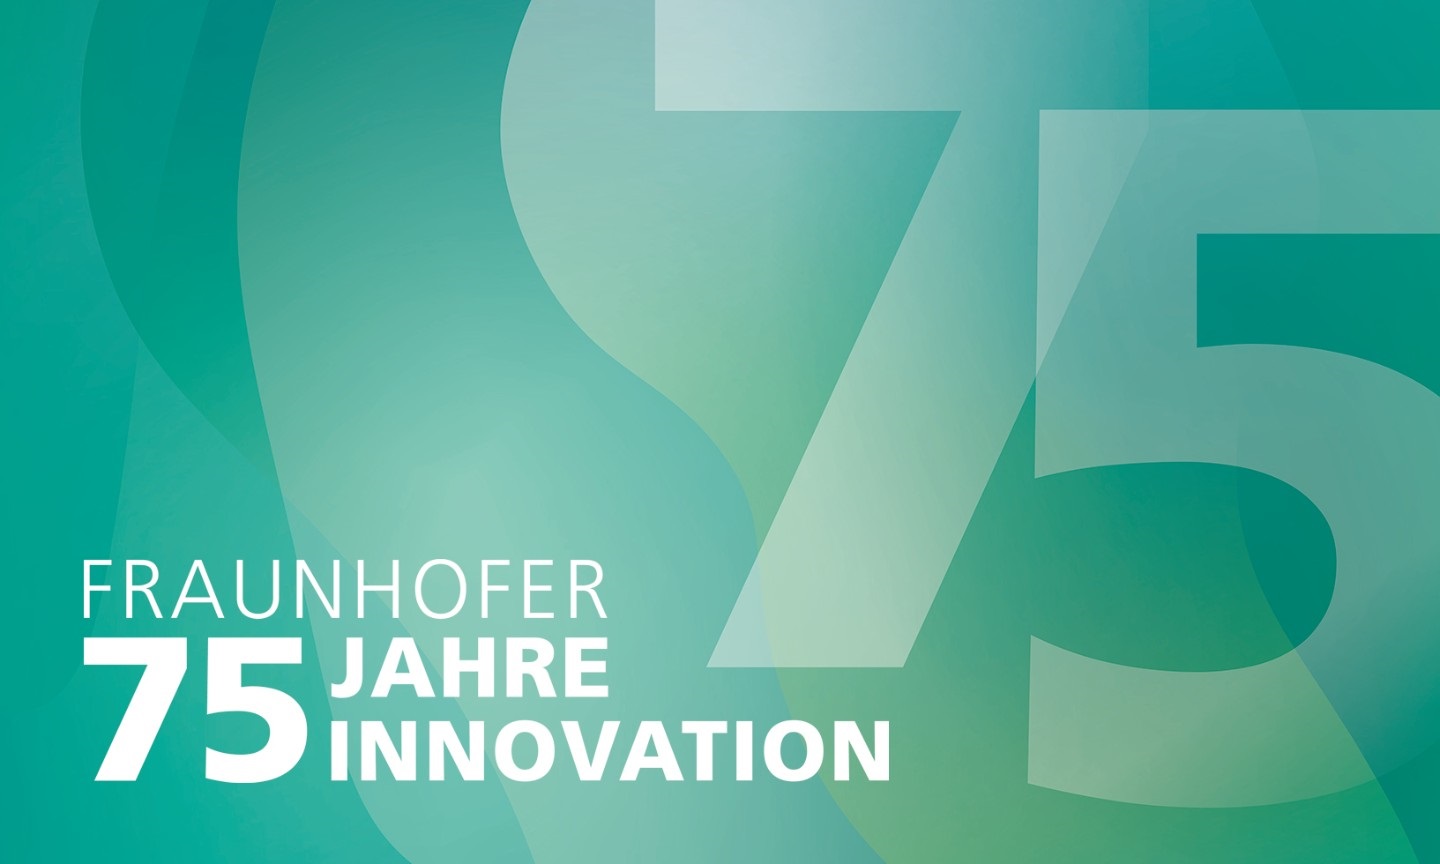 Fraunhofer wird 75 Jahre